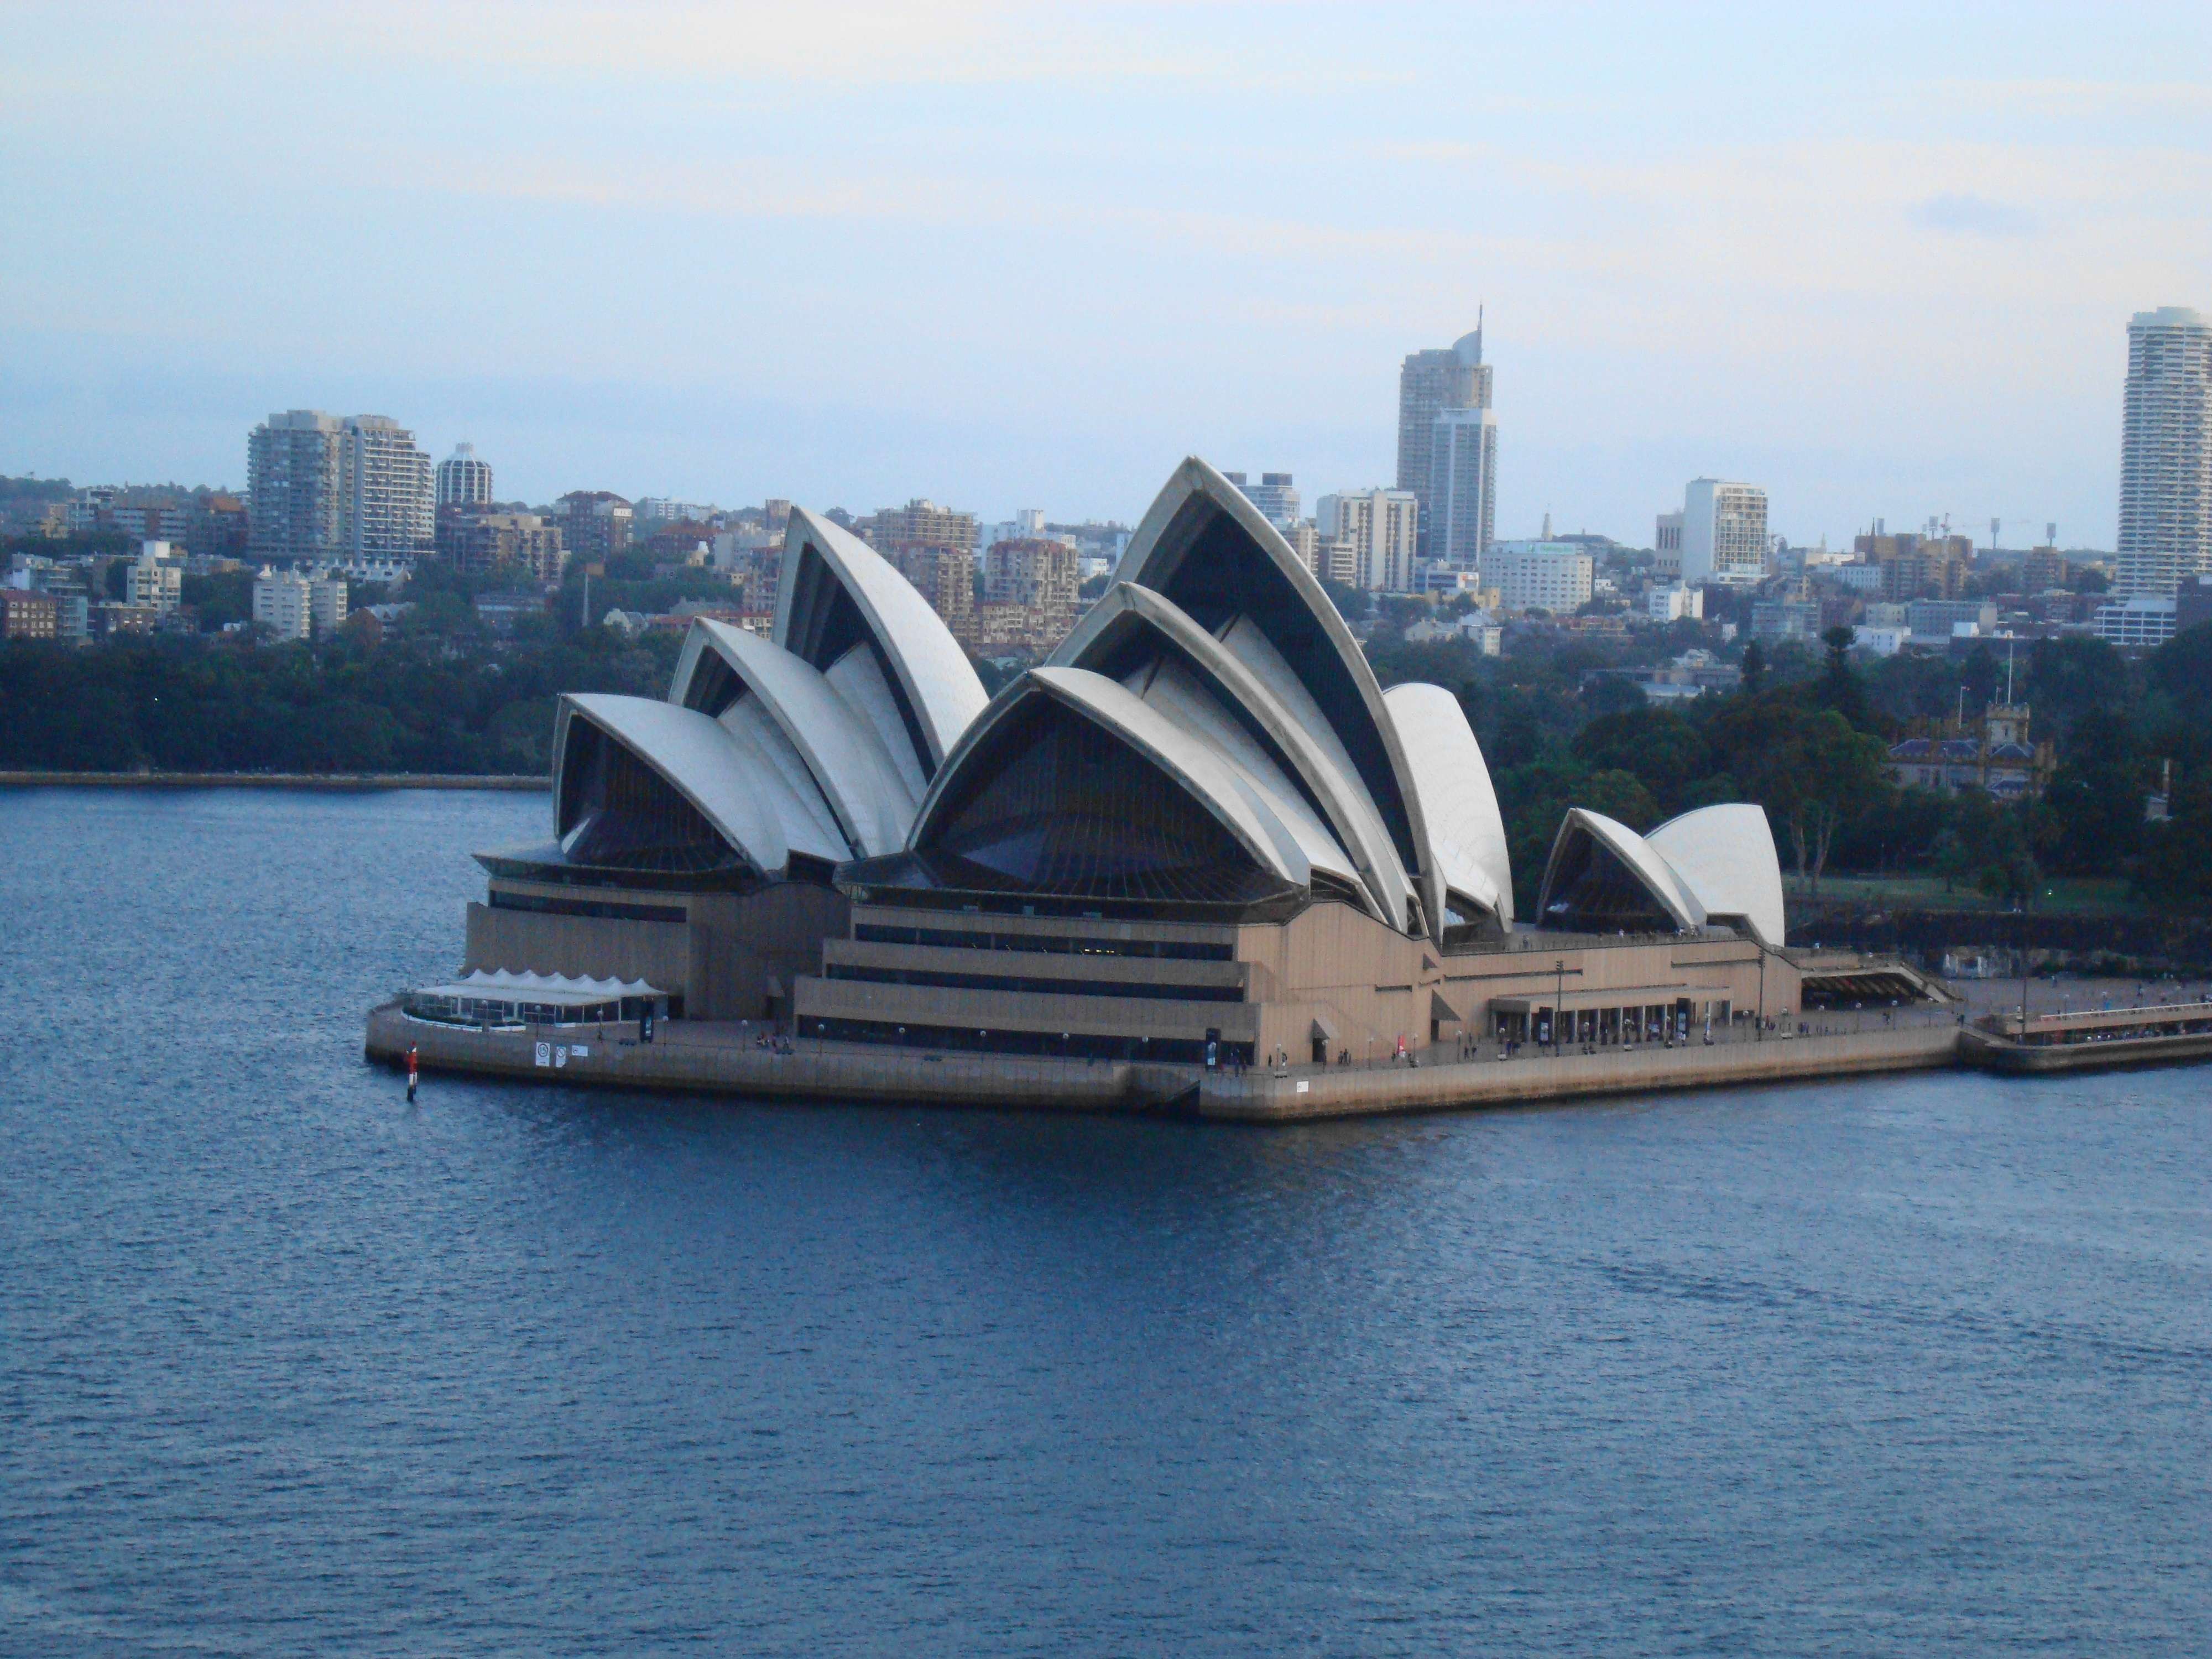 Un mes en Australia - Blogs de Australia - Inicio del viaje: Sídney y alrededores (11)